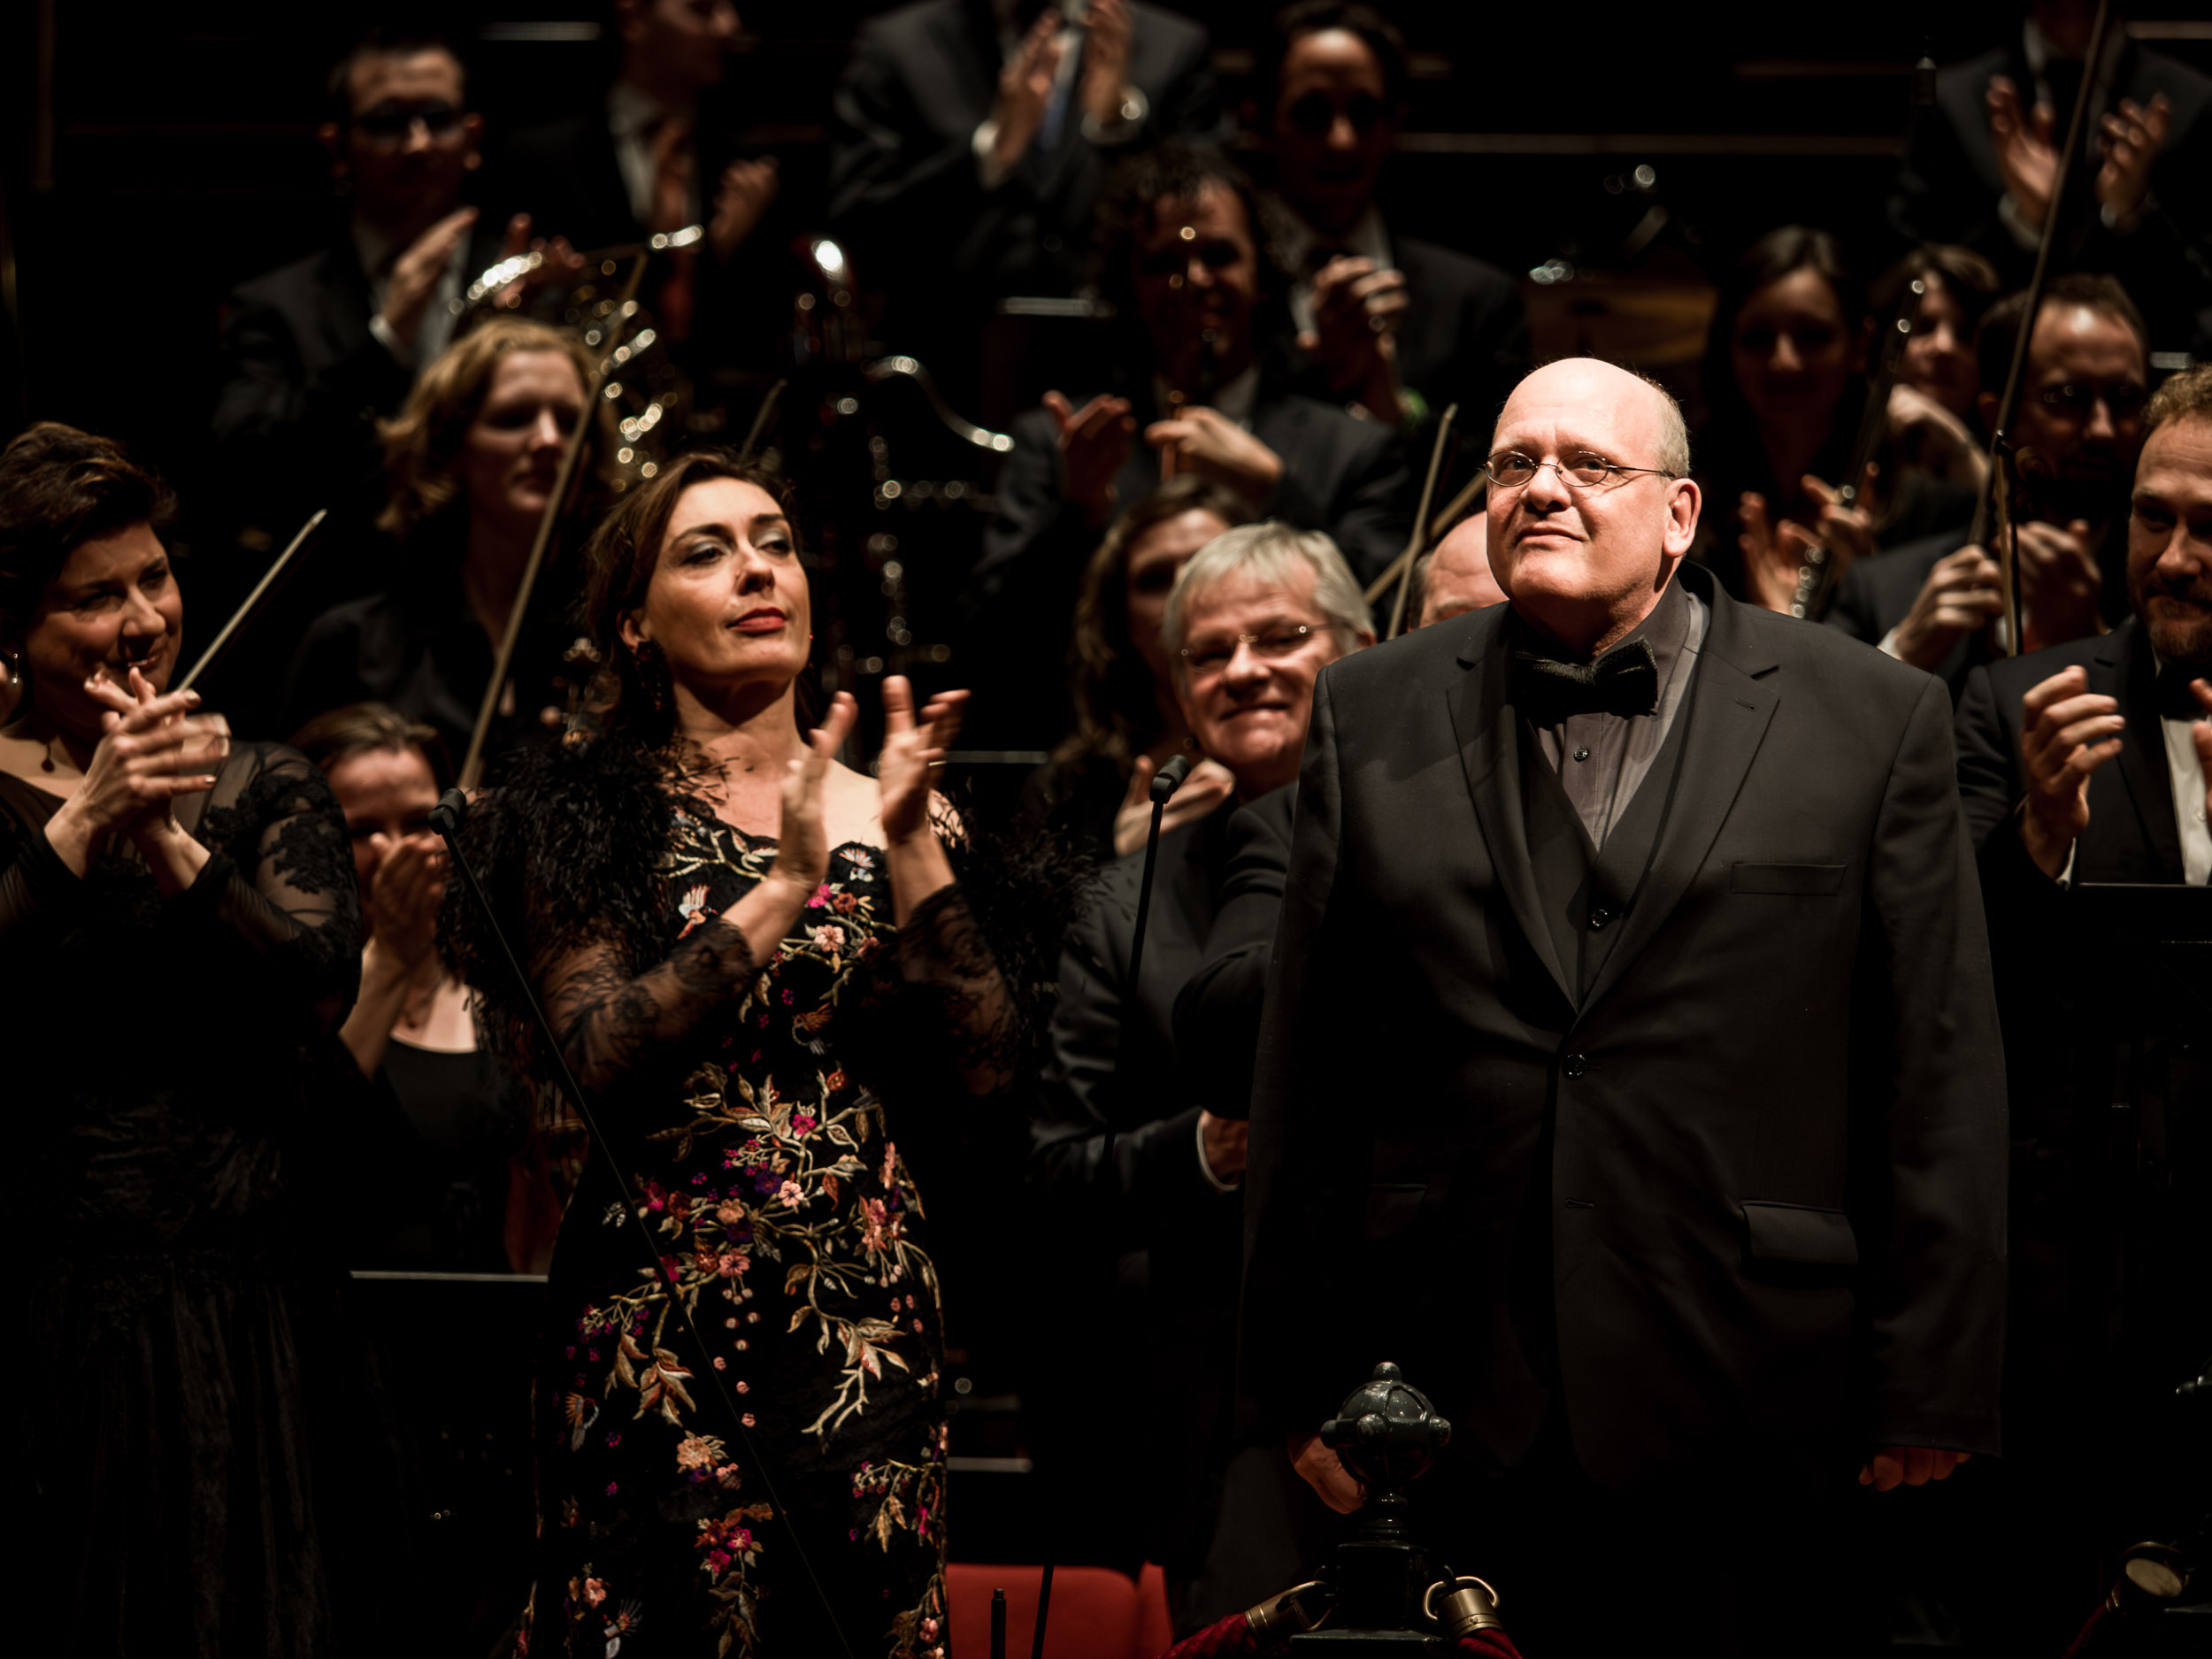 Detlev Glanert tijdens het applaus voor het Requiem na de uitvoering van Requiem voor Jheronimus Bosch in het Concertgebouw Amsterdam (foto: Renske Vrolijk)